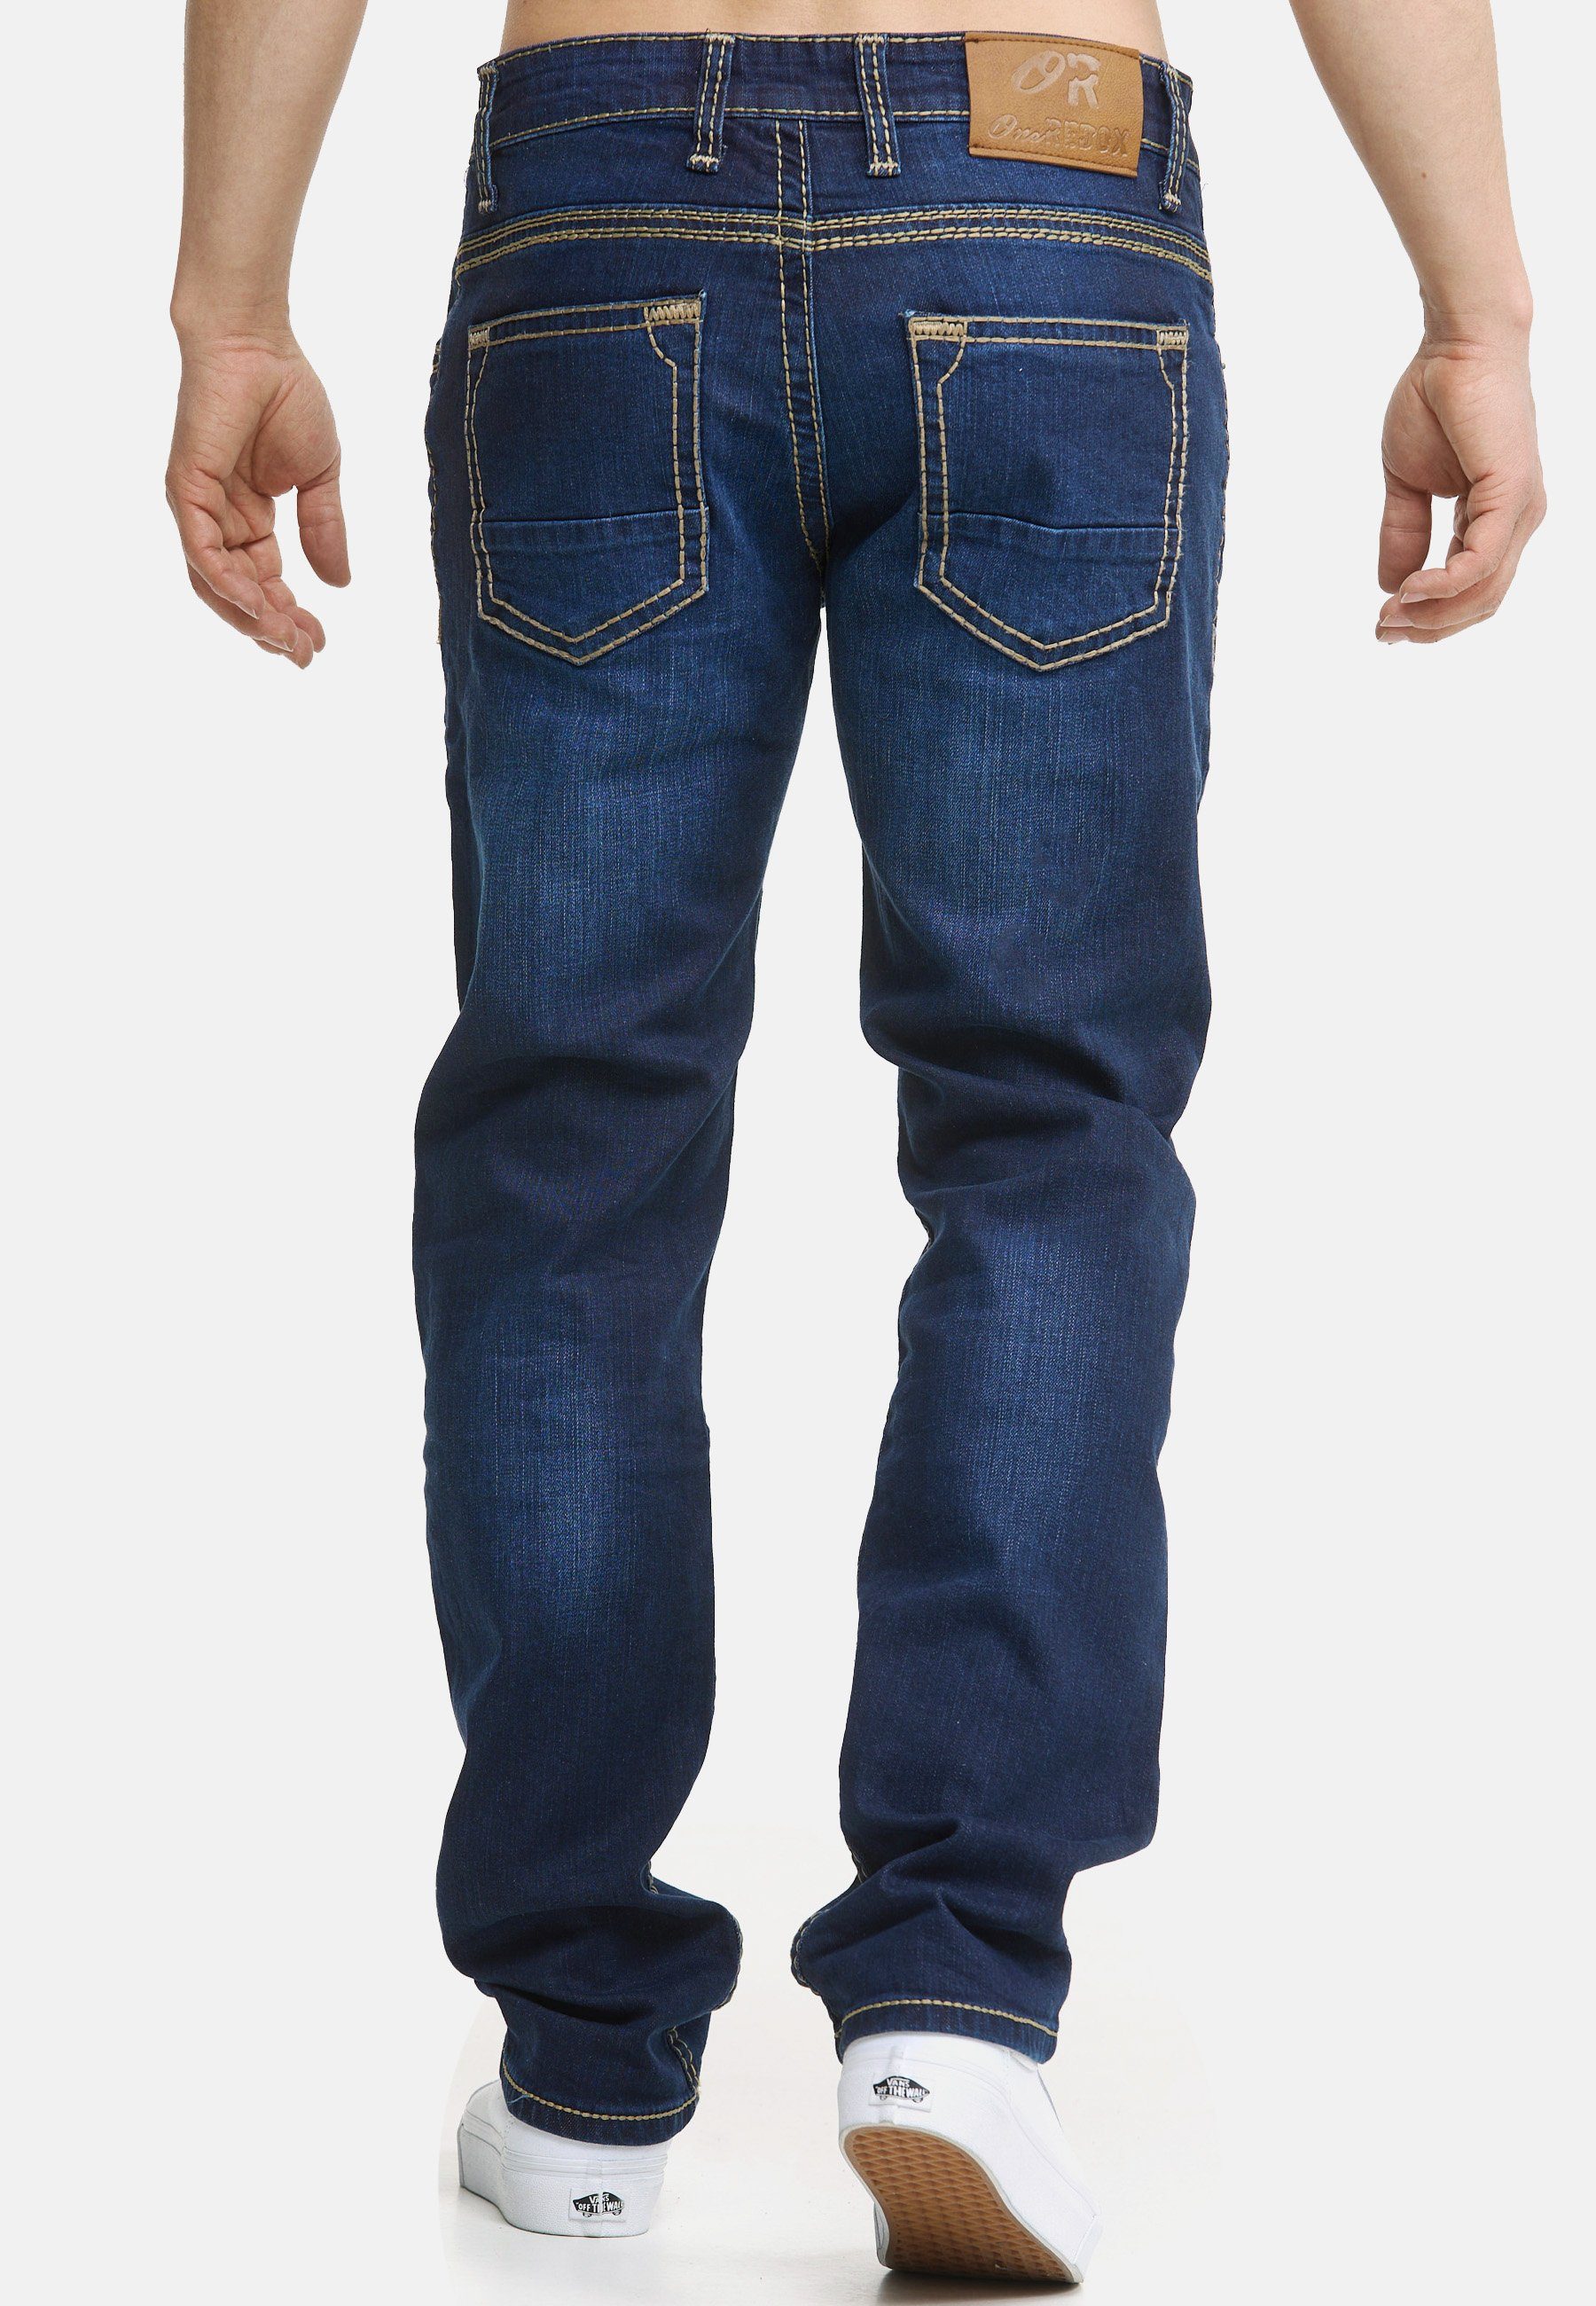 Pocket Fit Regular Hose Männer blue Bootcut Denim Code47 Five Herren Jeans Regular-fit-Jeans Code47 907